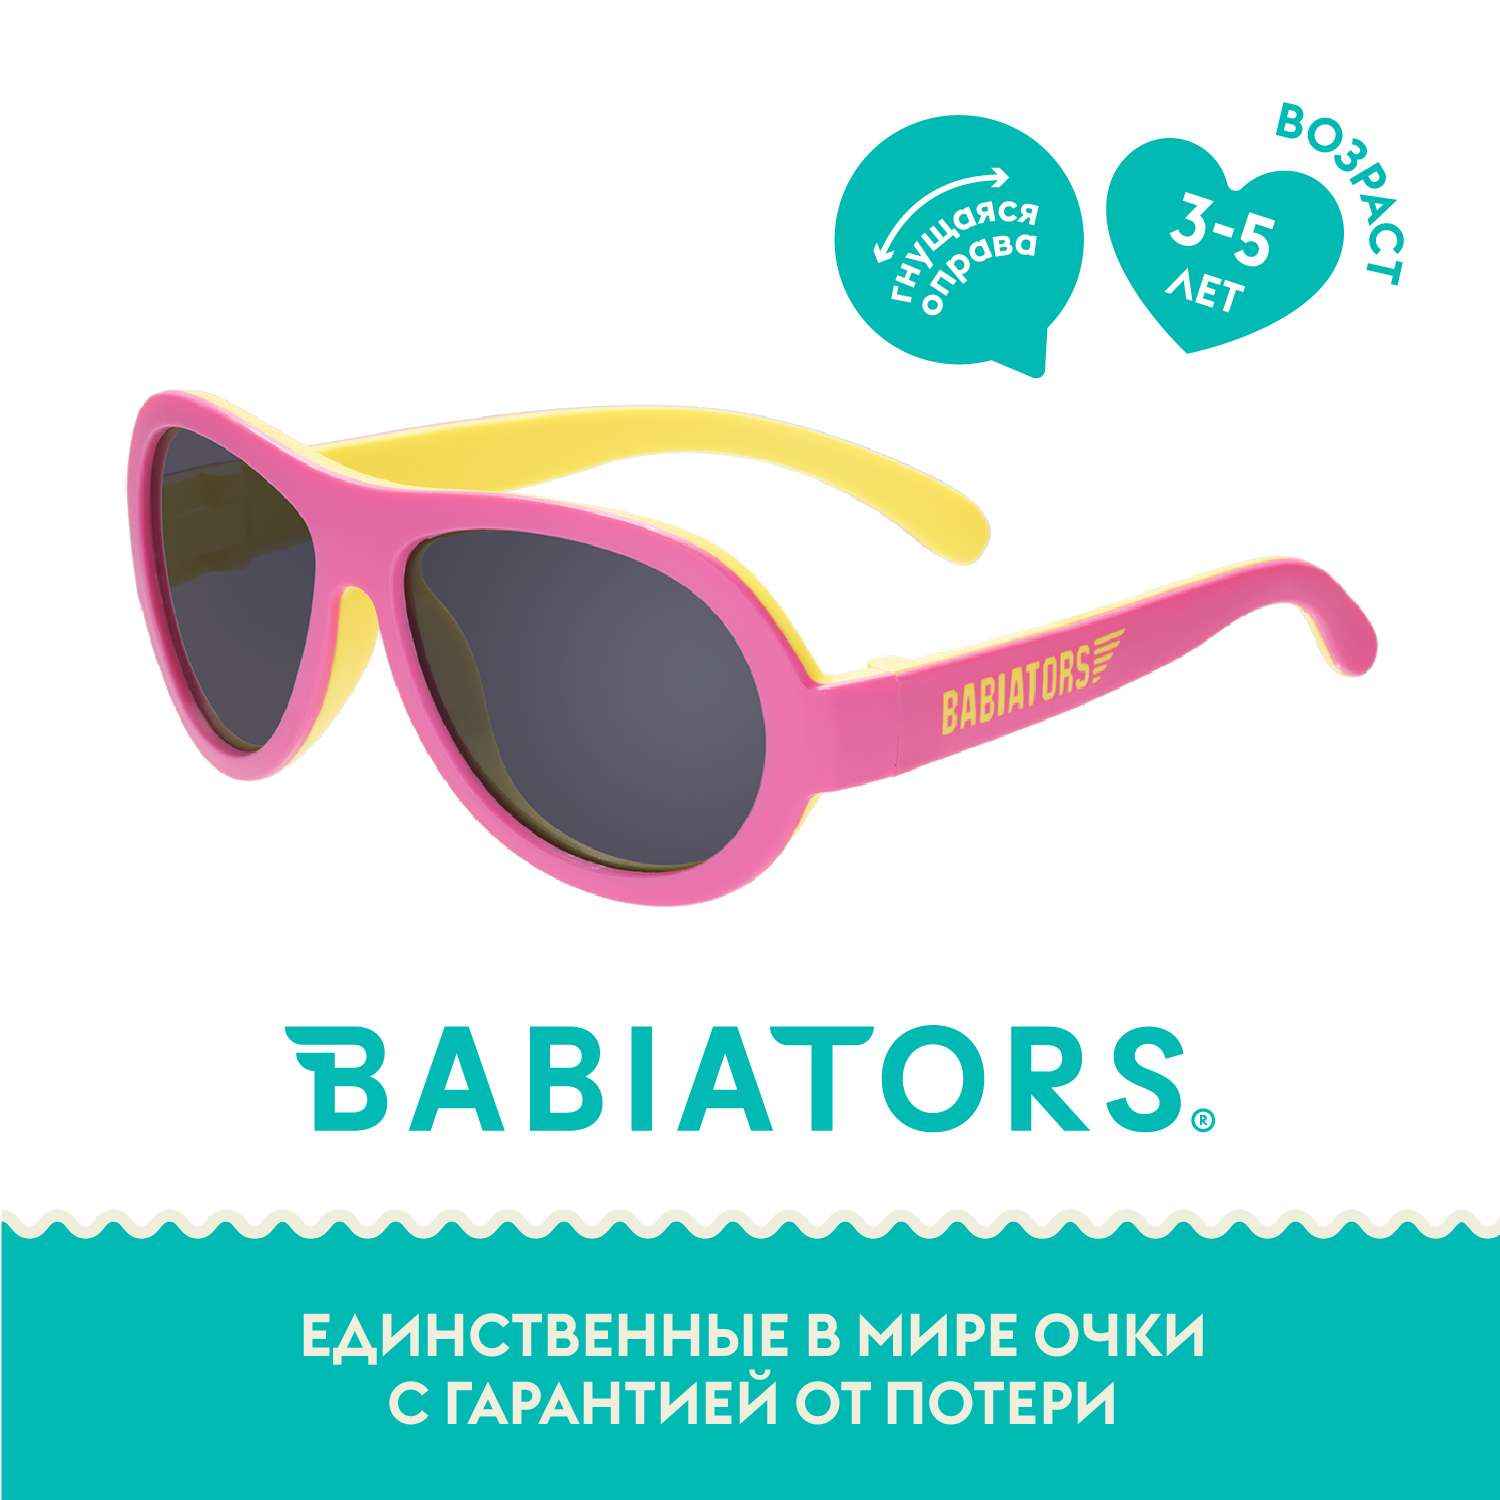 Солнцезащитные очки 3-5 Babiators BAB-212 - фото 1